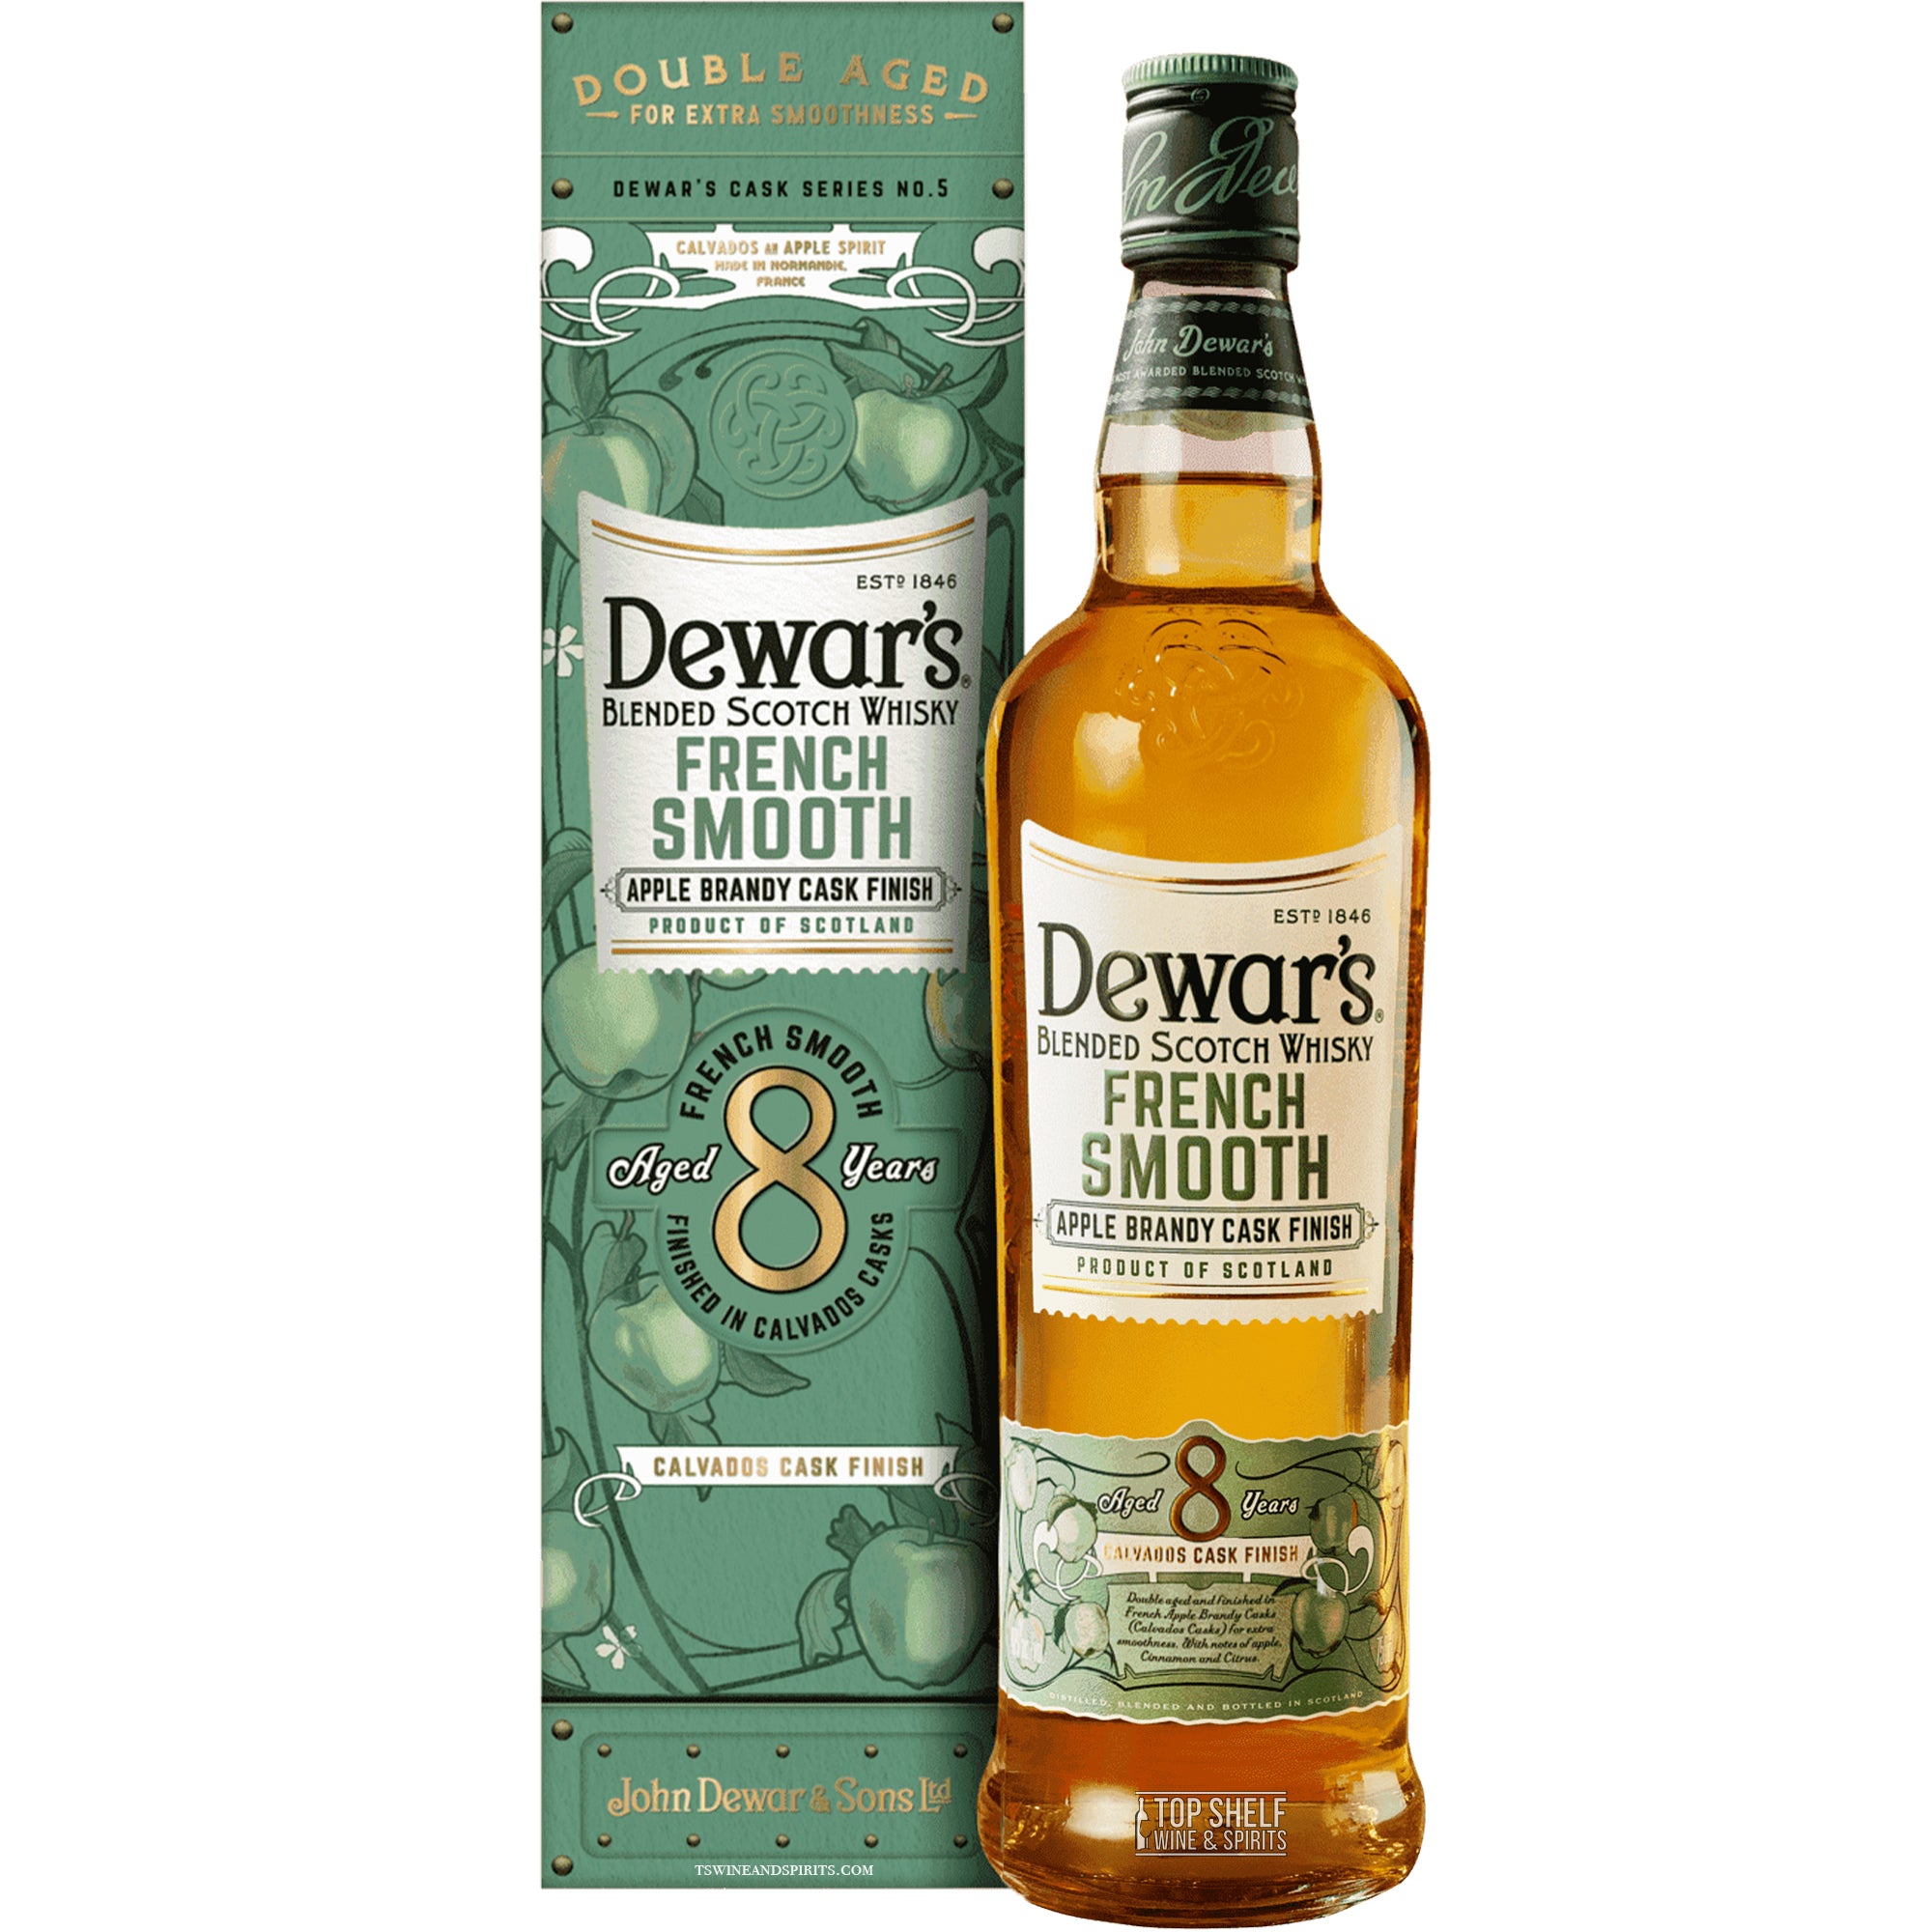 Dewar's French Smooth Scotch